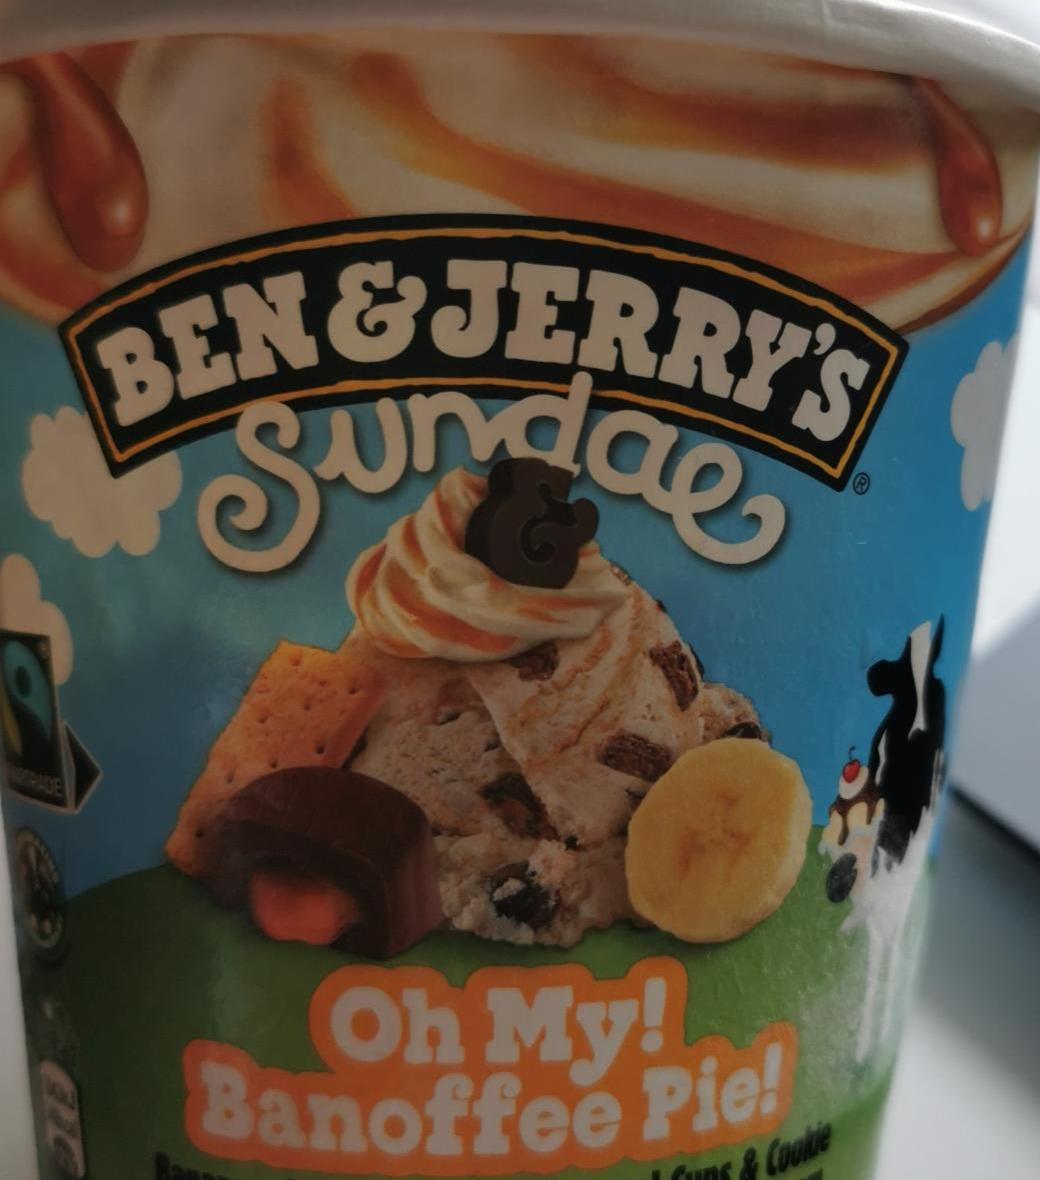 Képek - Ben & Jerry's Sundae Oh My! Banoffee Pie! jégkrém banánpürével, kakaós-karamelles csemegével 427 ml